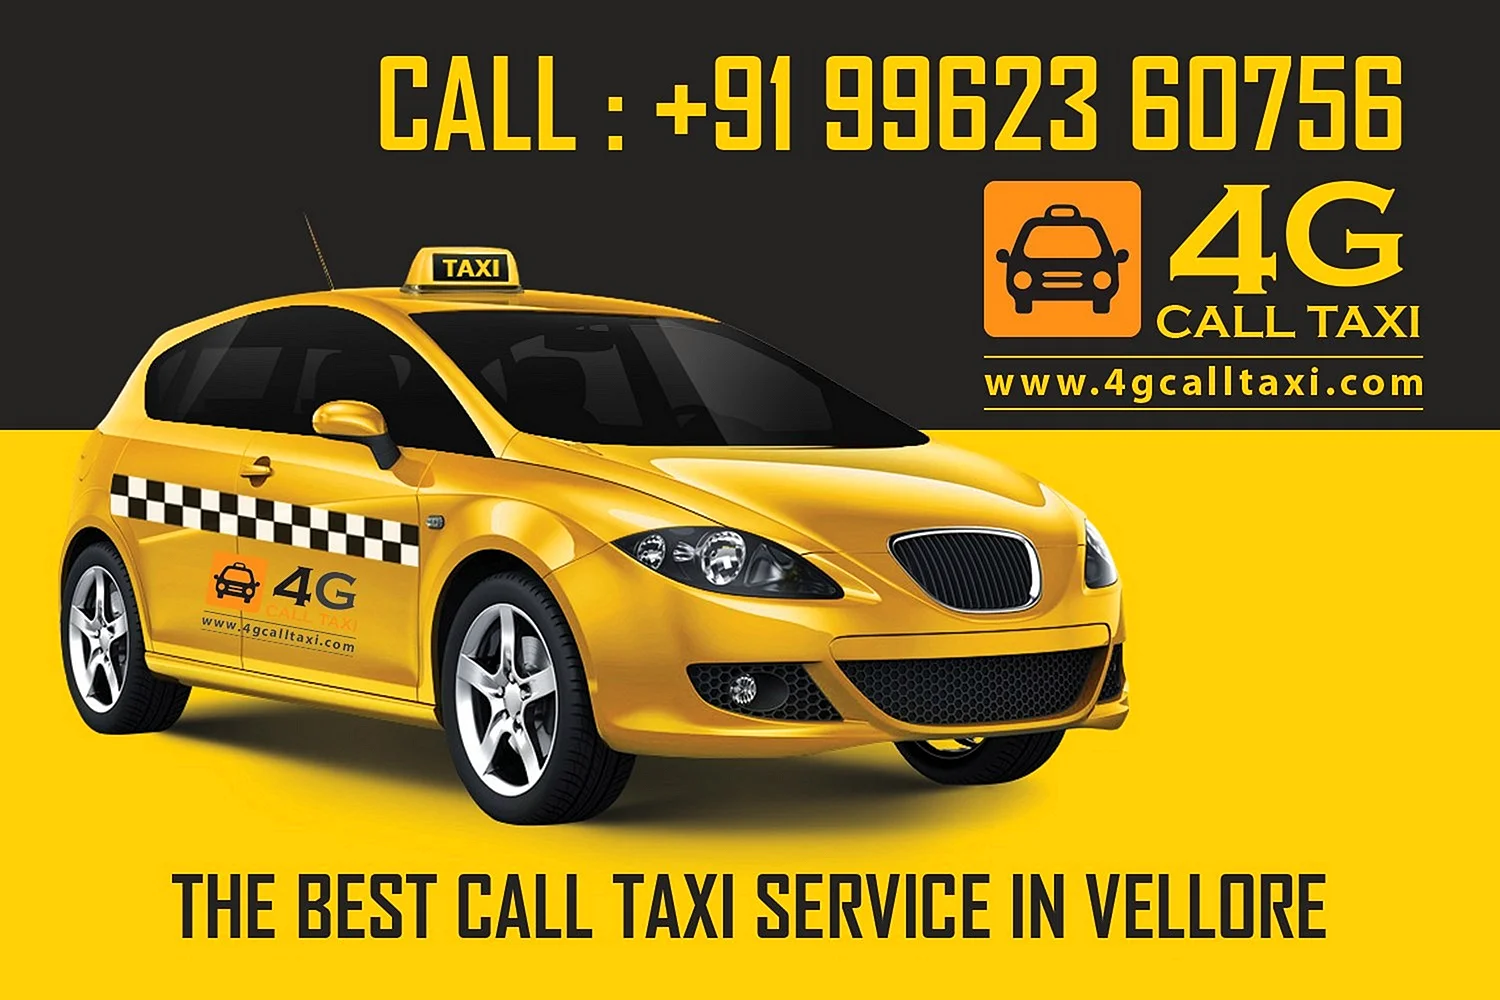 Реклама такси